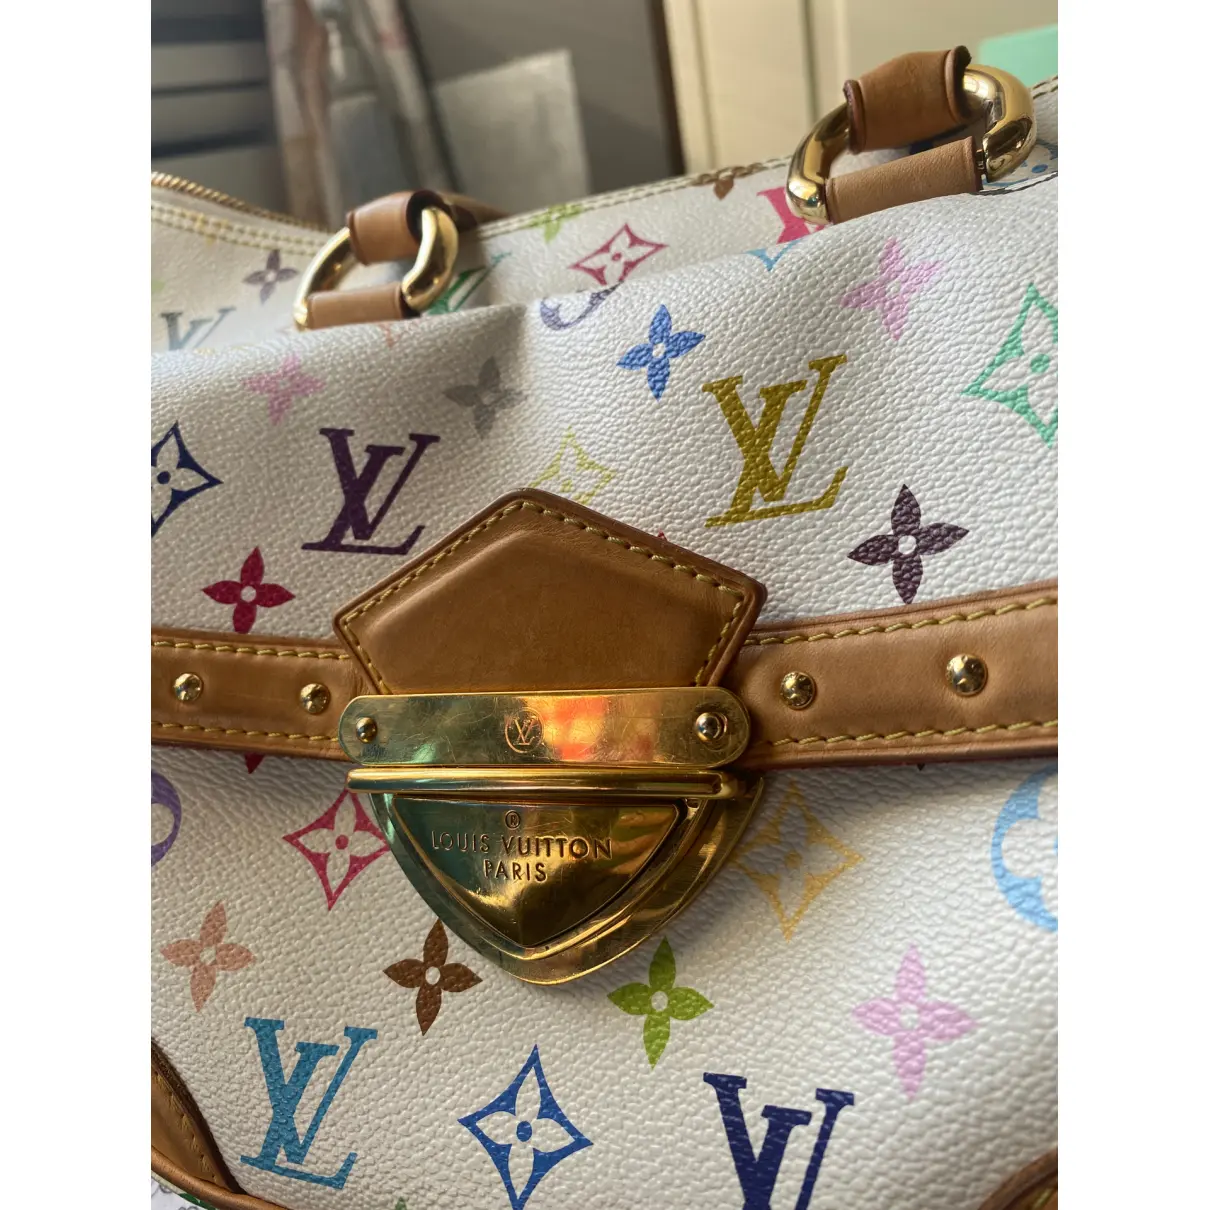 Rita cloth handbag Louis Vuitton